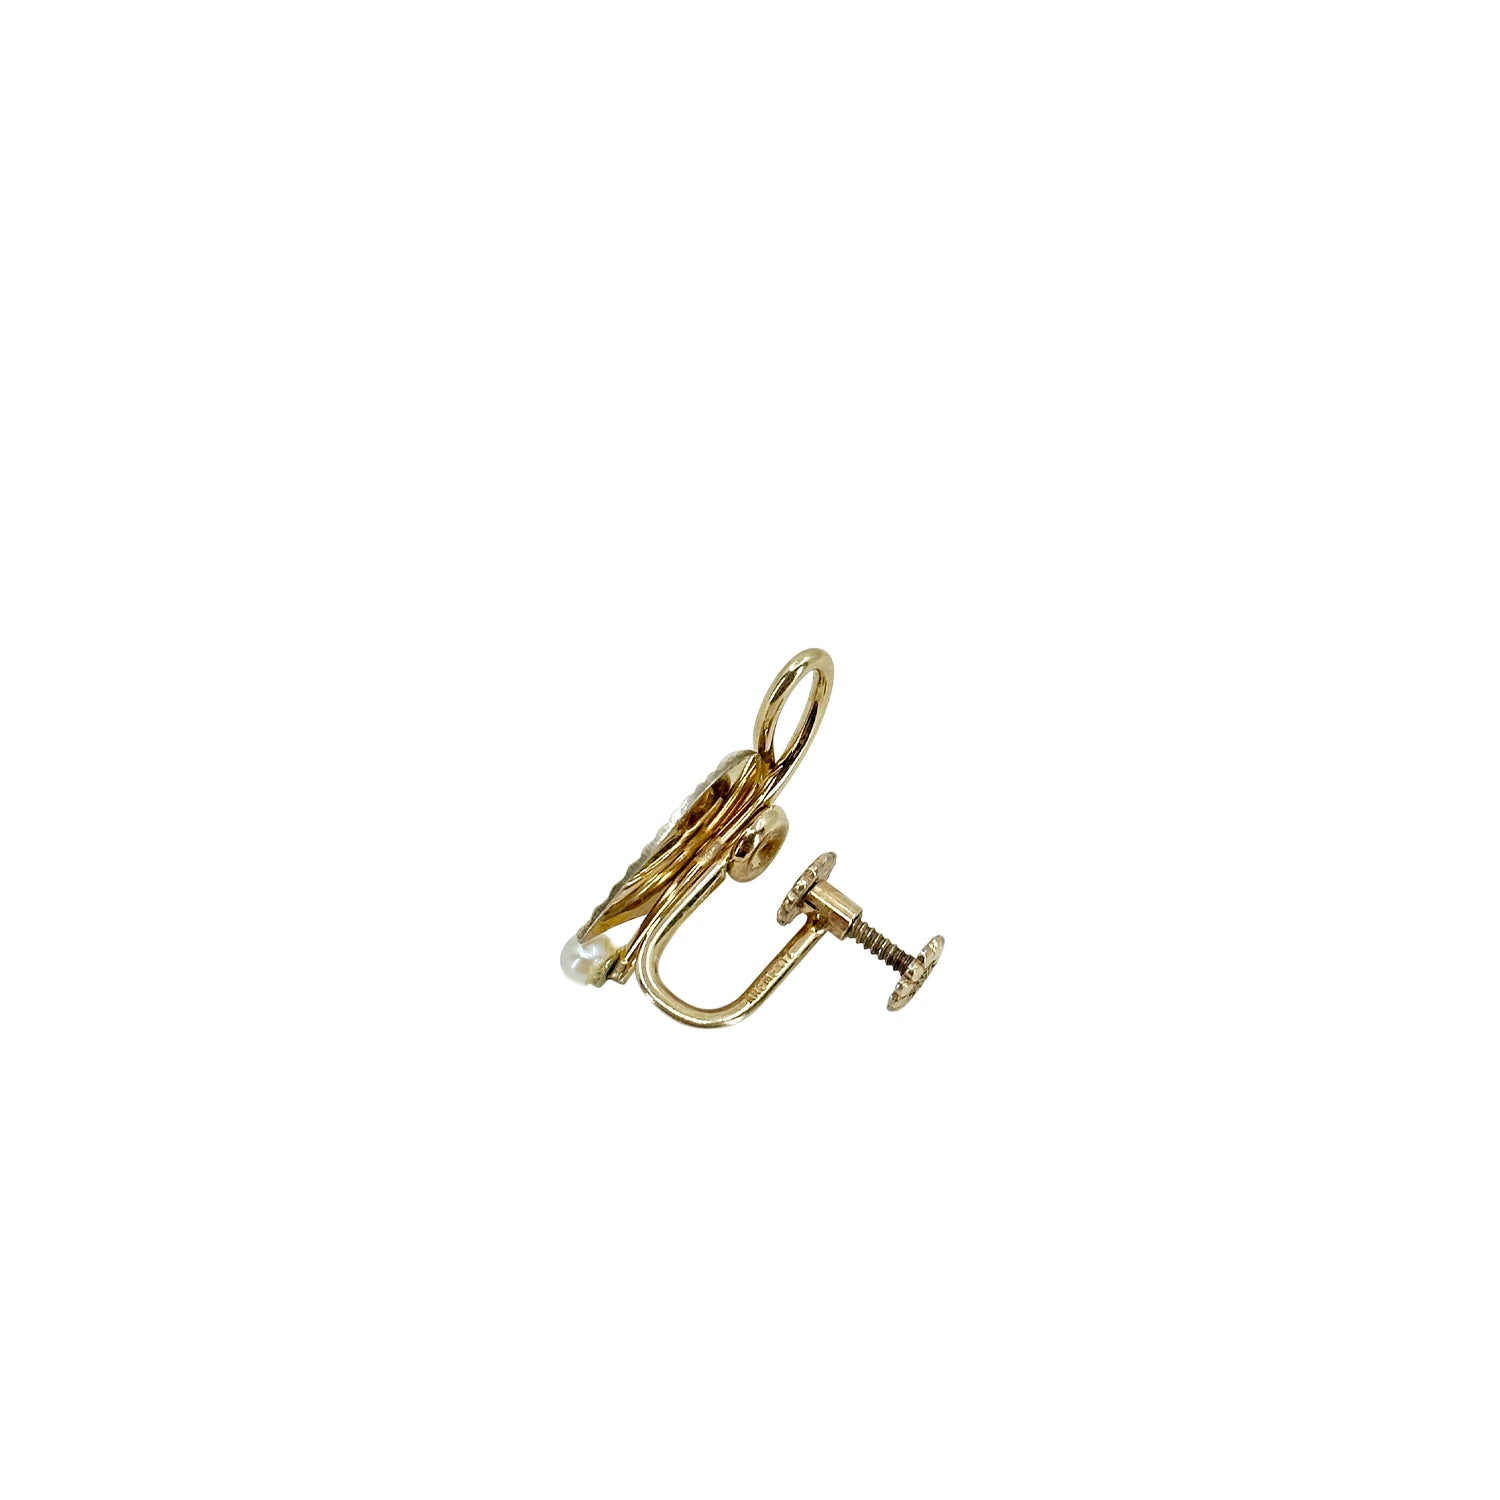 Krementz Designer Mid-Century Akoya Saltwater Cultured Pearl Screwback Vintage Earrings - Gold Filled